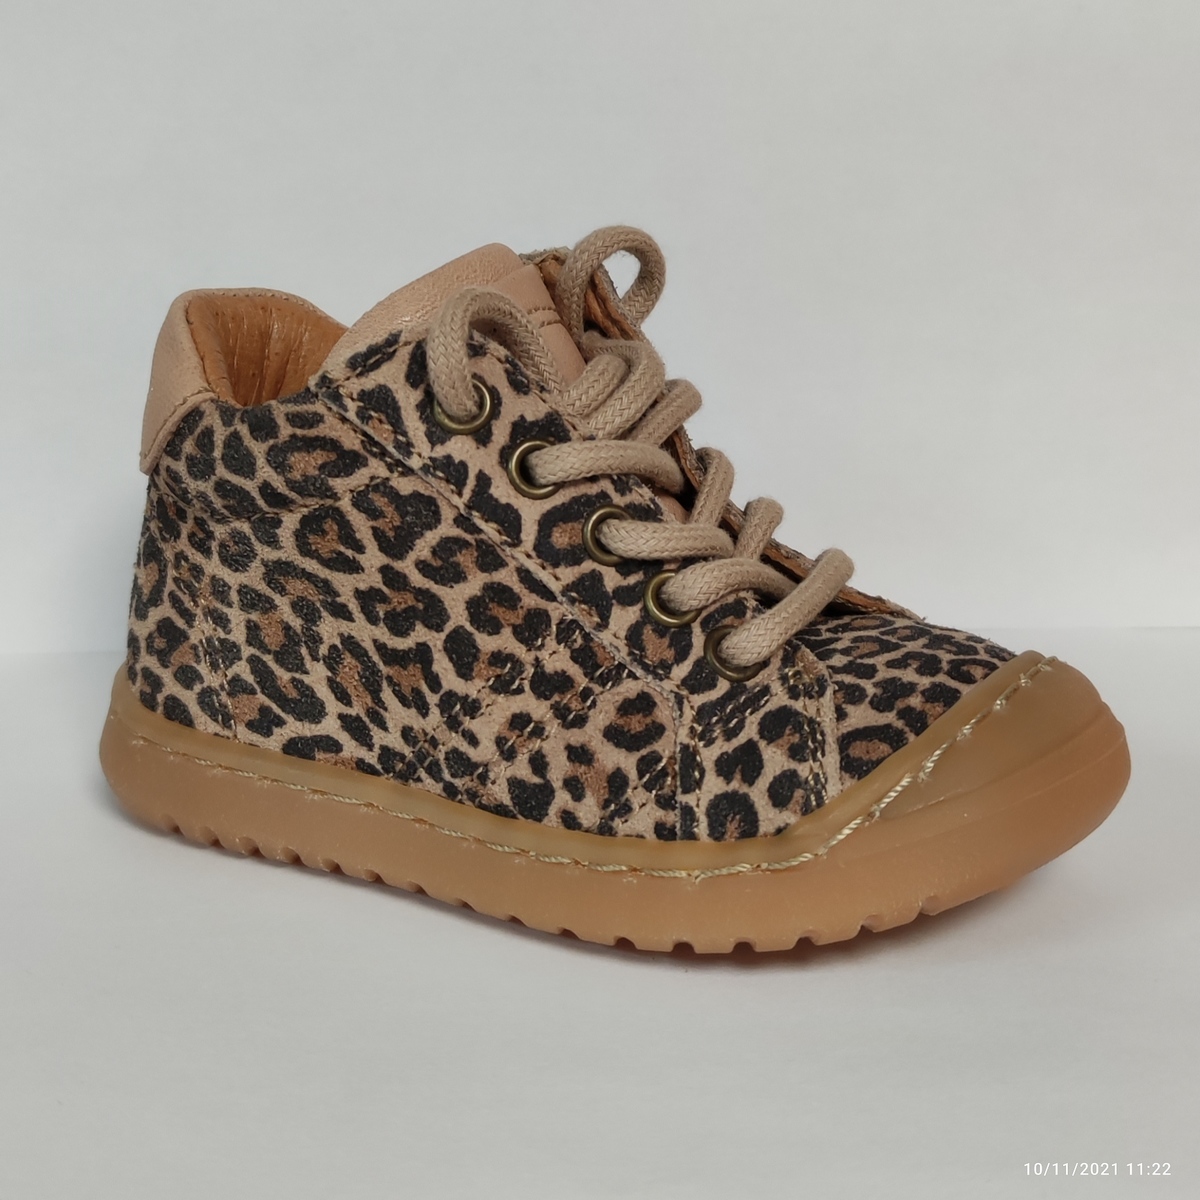 Chaussures Fille Bébé 0-2 ans Thor Leopard Autres